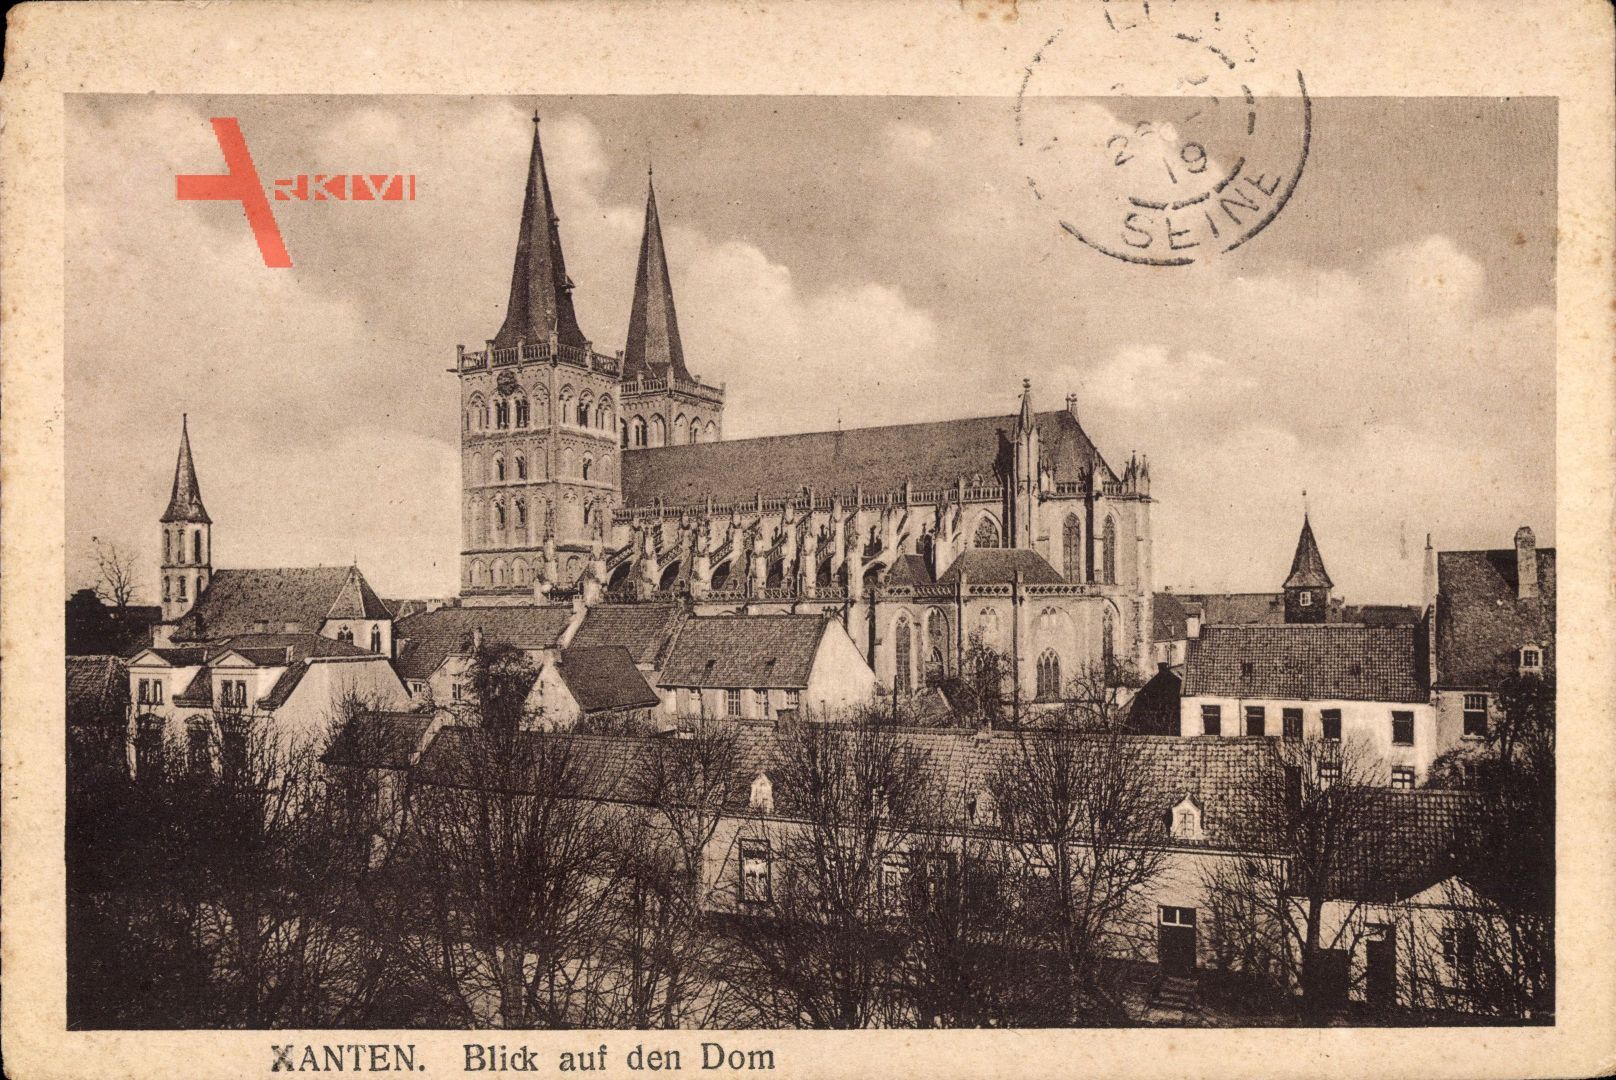 Xanten am Niederrhein, Blick auf den Dom über Häuser hinweg, Glockenturm